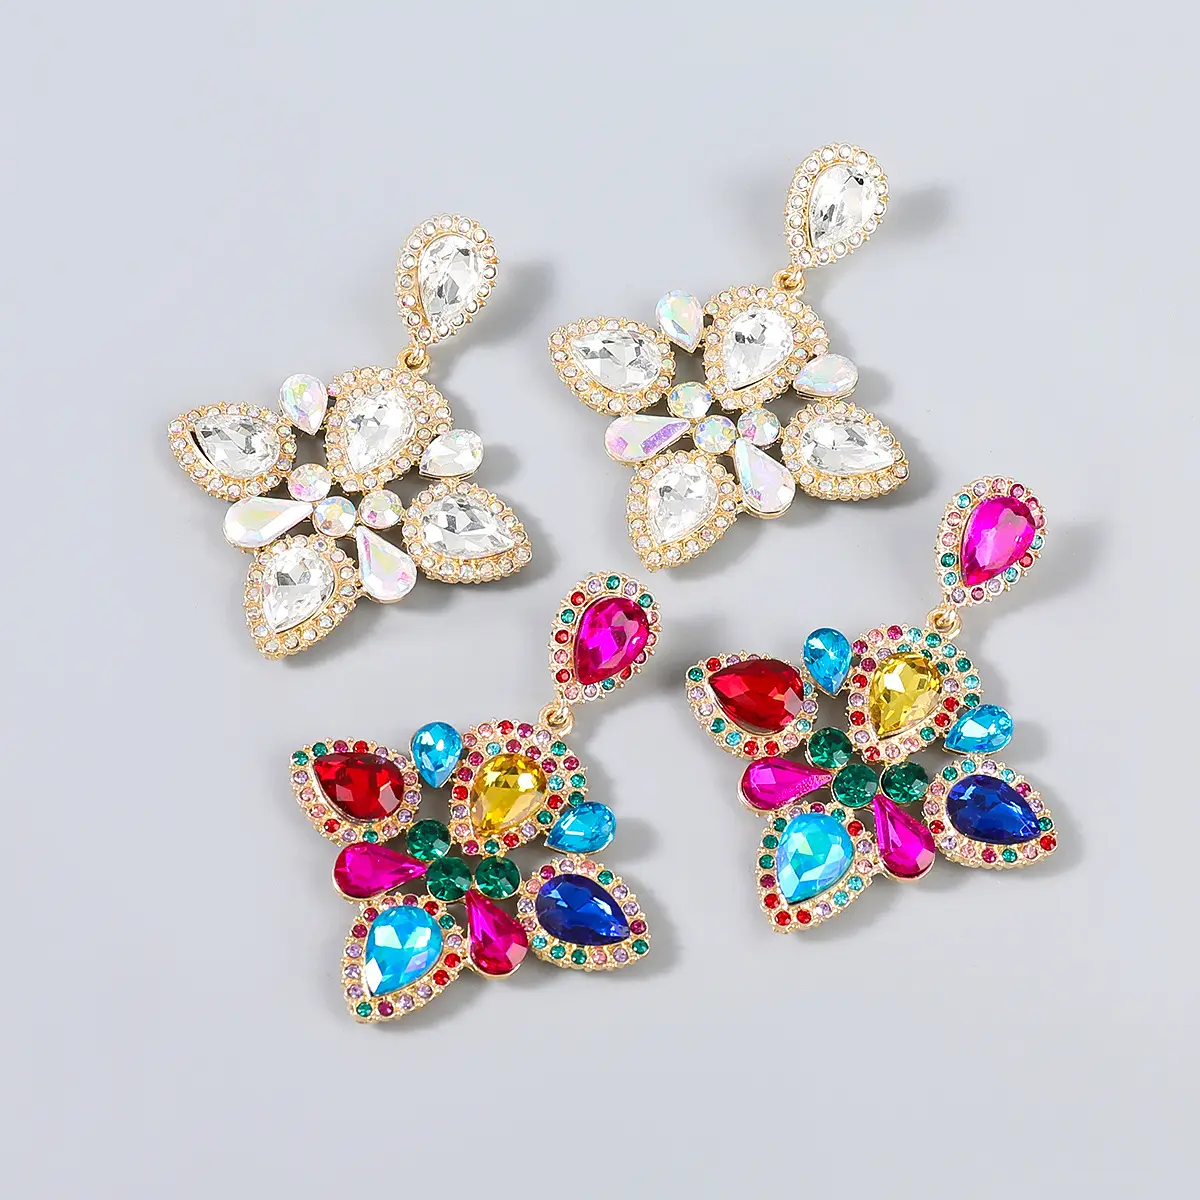 luxury contracted pendant shining crystal flower stud earrings rhinestone teardrop earring for women